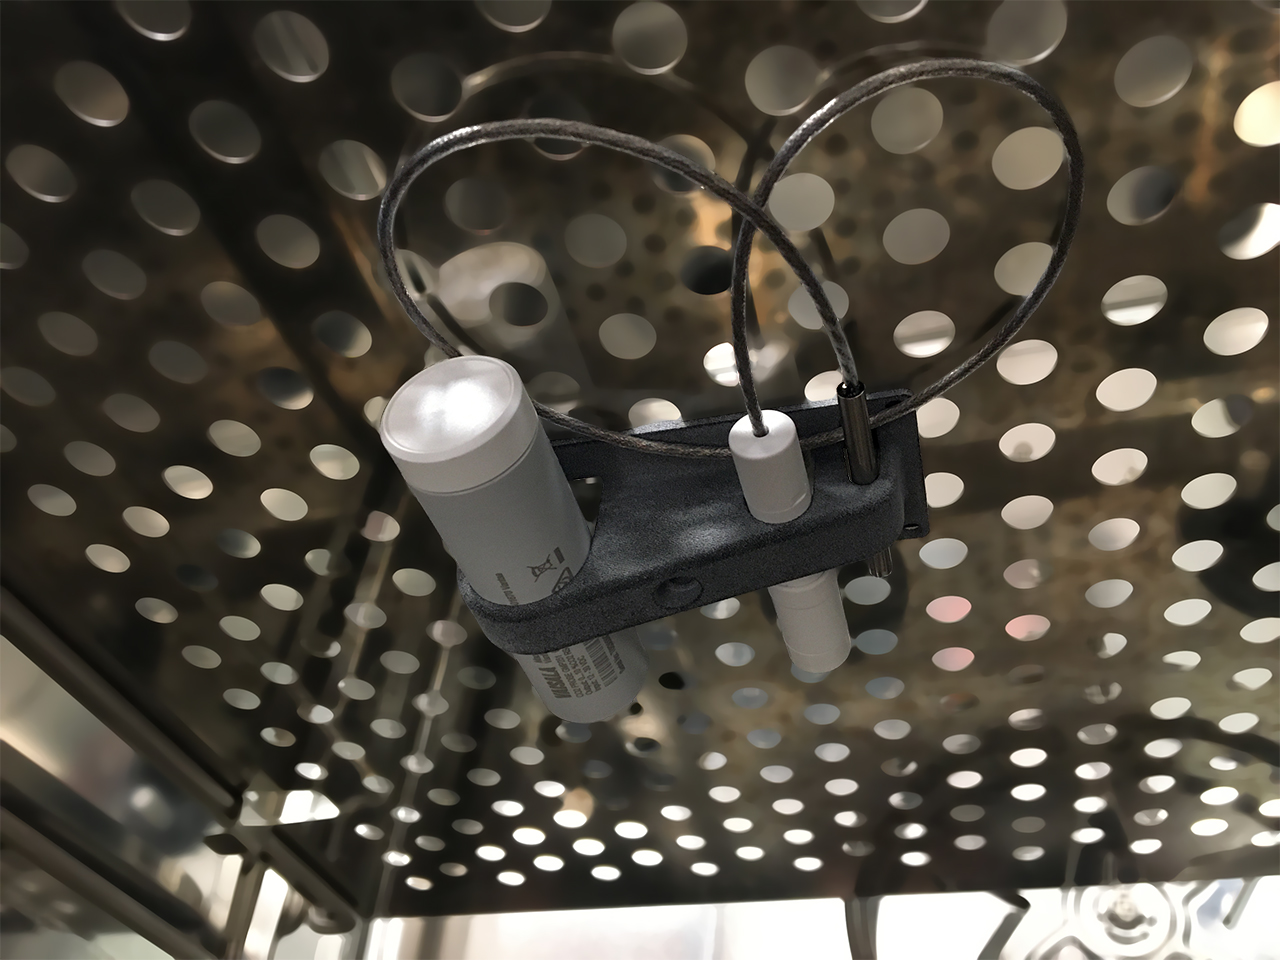 GMP251 con sondas de temperatura y humedad montadas en incubadora